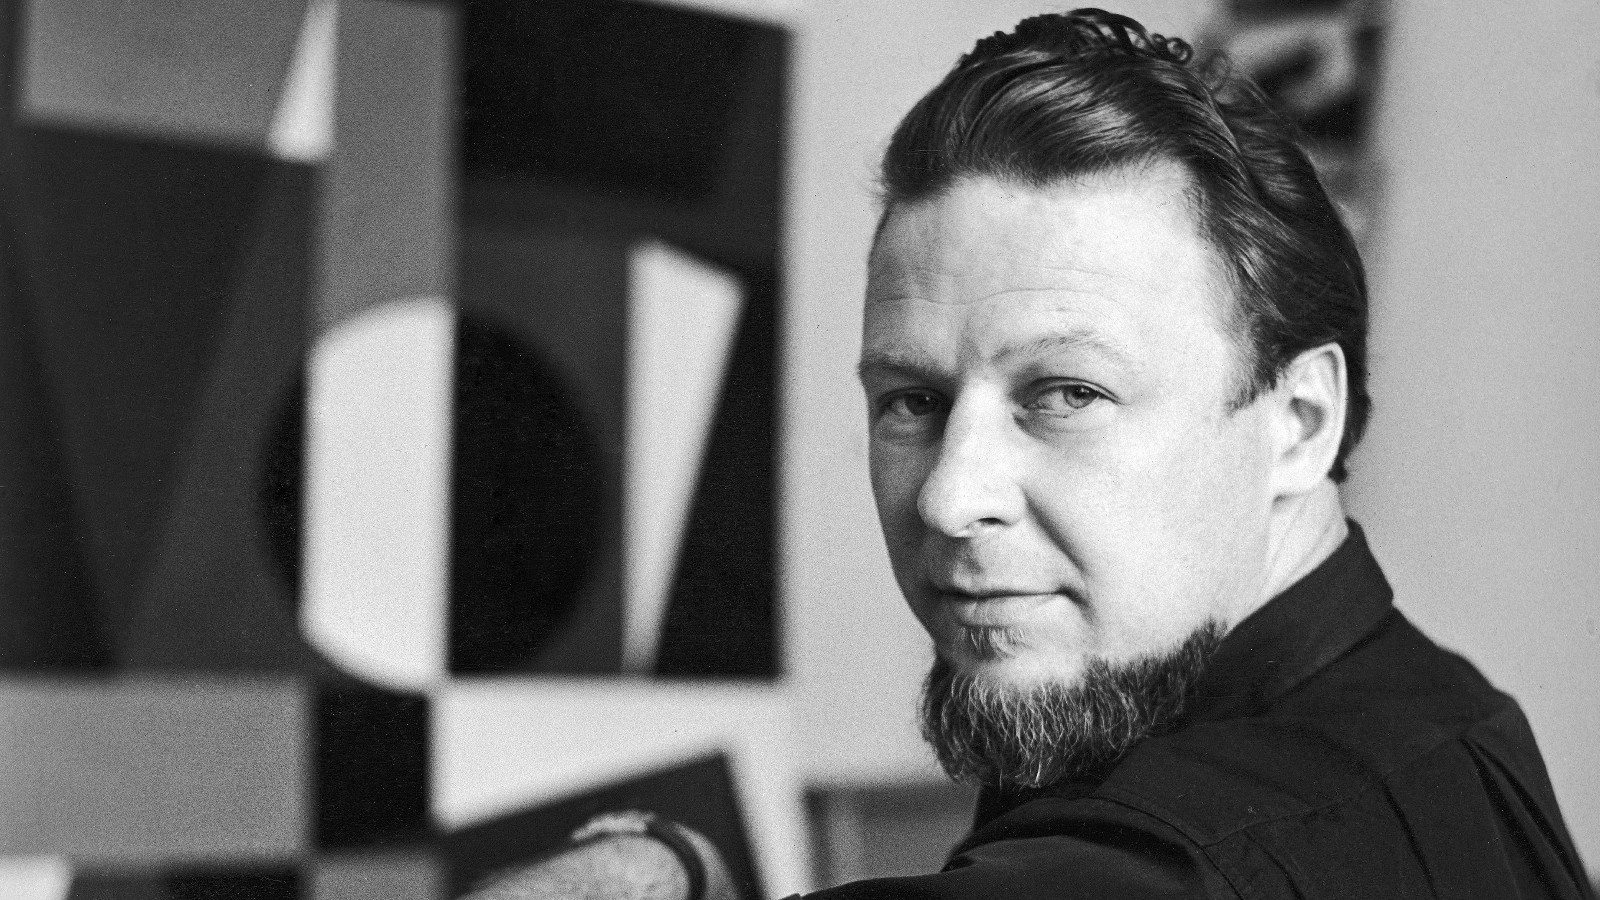 Kuvassa on Lars-Gunnar Nordström, joka istuu ja katsoo olkapäänsä yli. Taustalla näkyy taiteilijan teos epätarkasti. Kuva on musta-valkoinen.